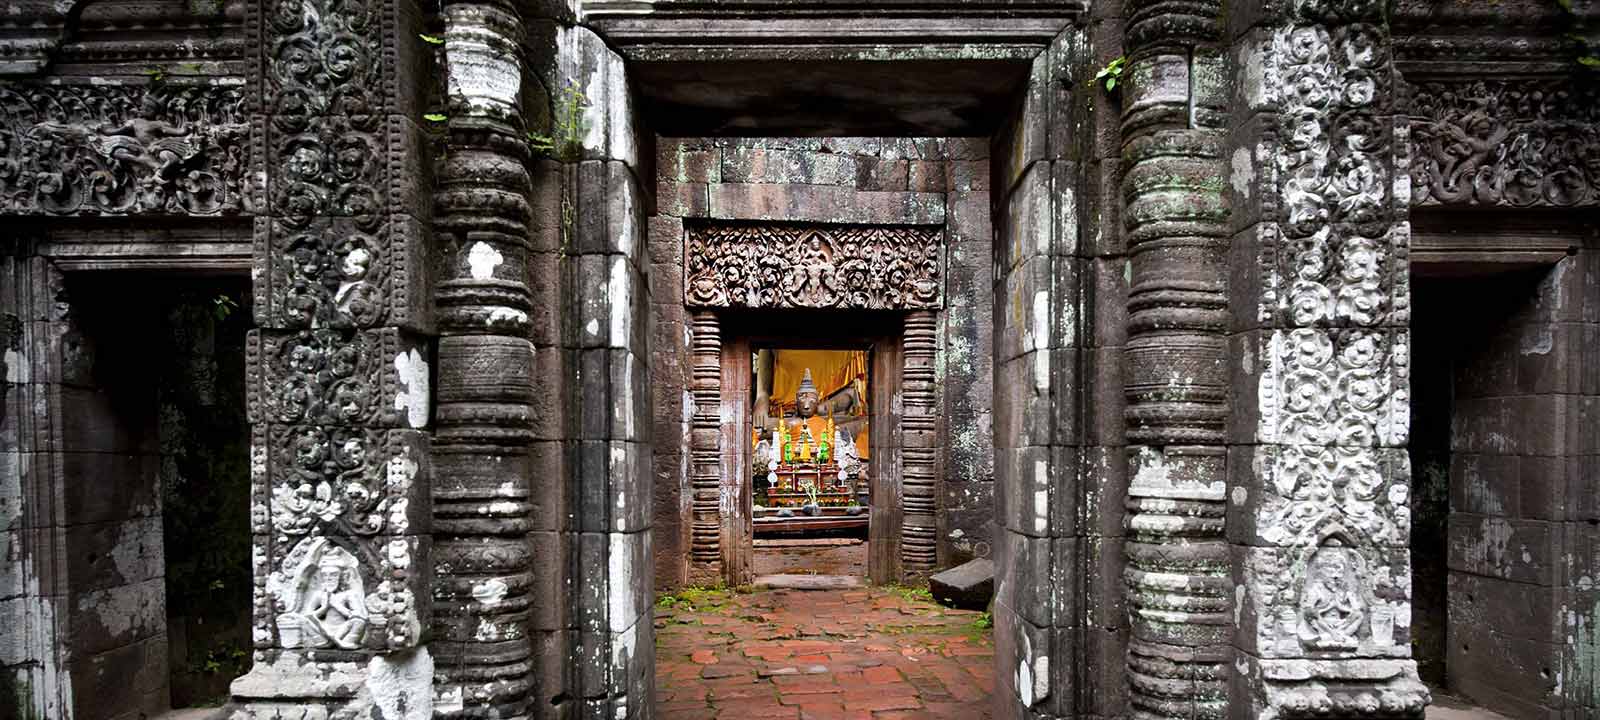 Wat Phou après son temps glorieux